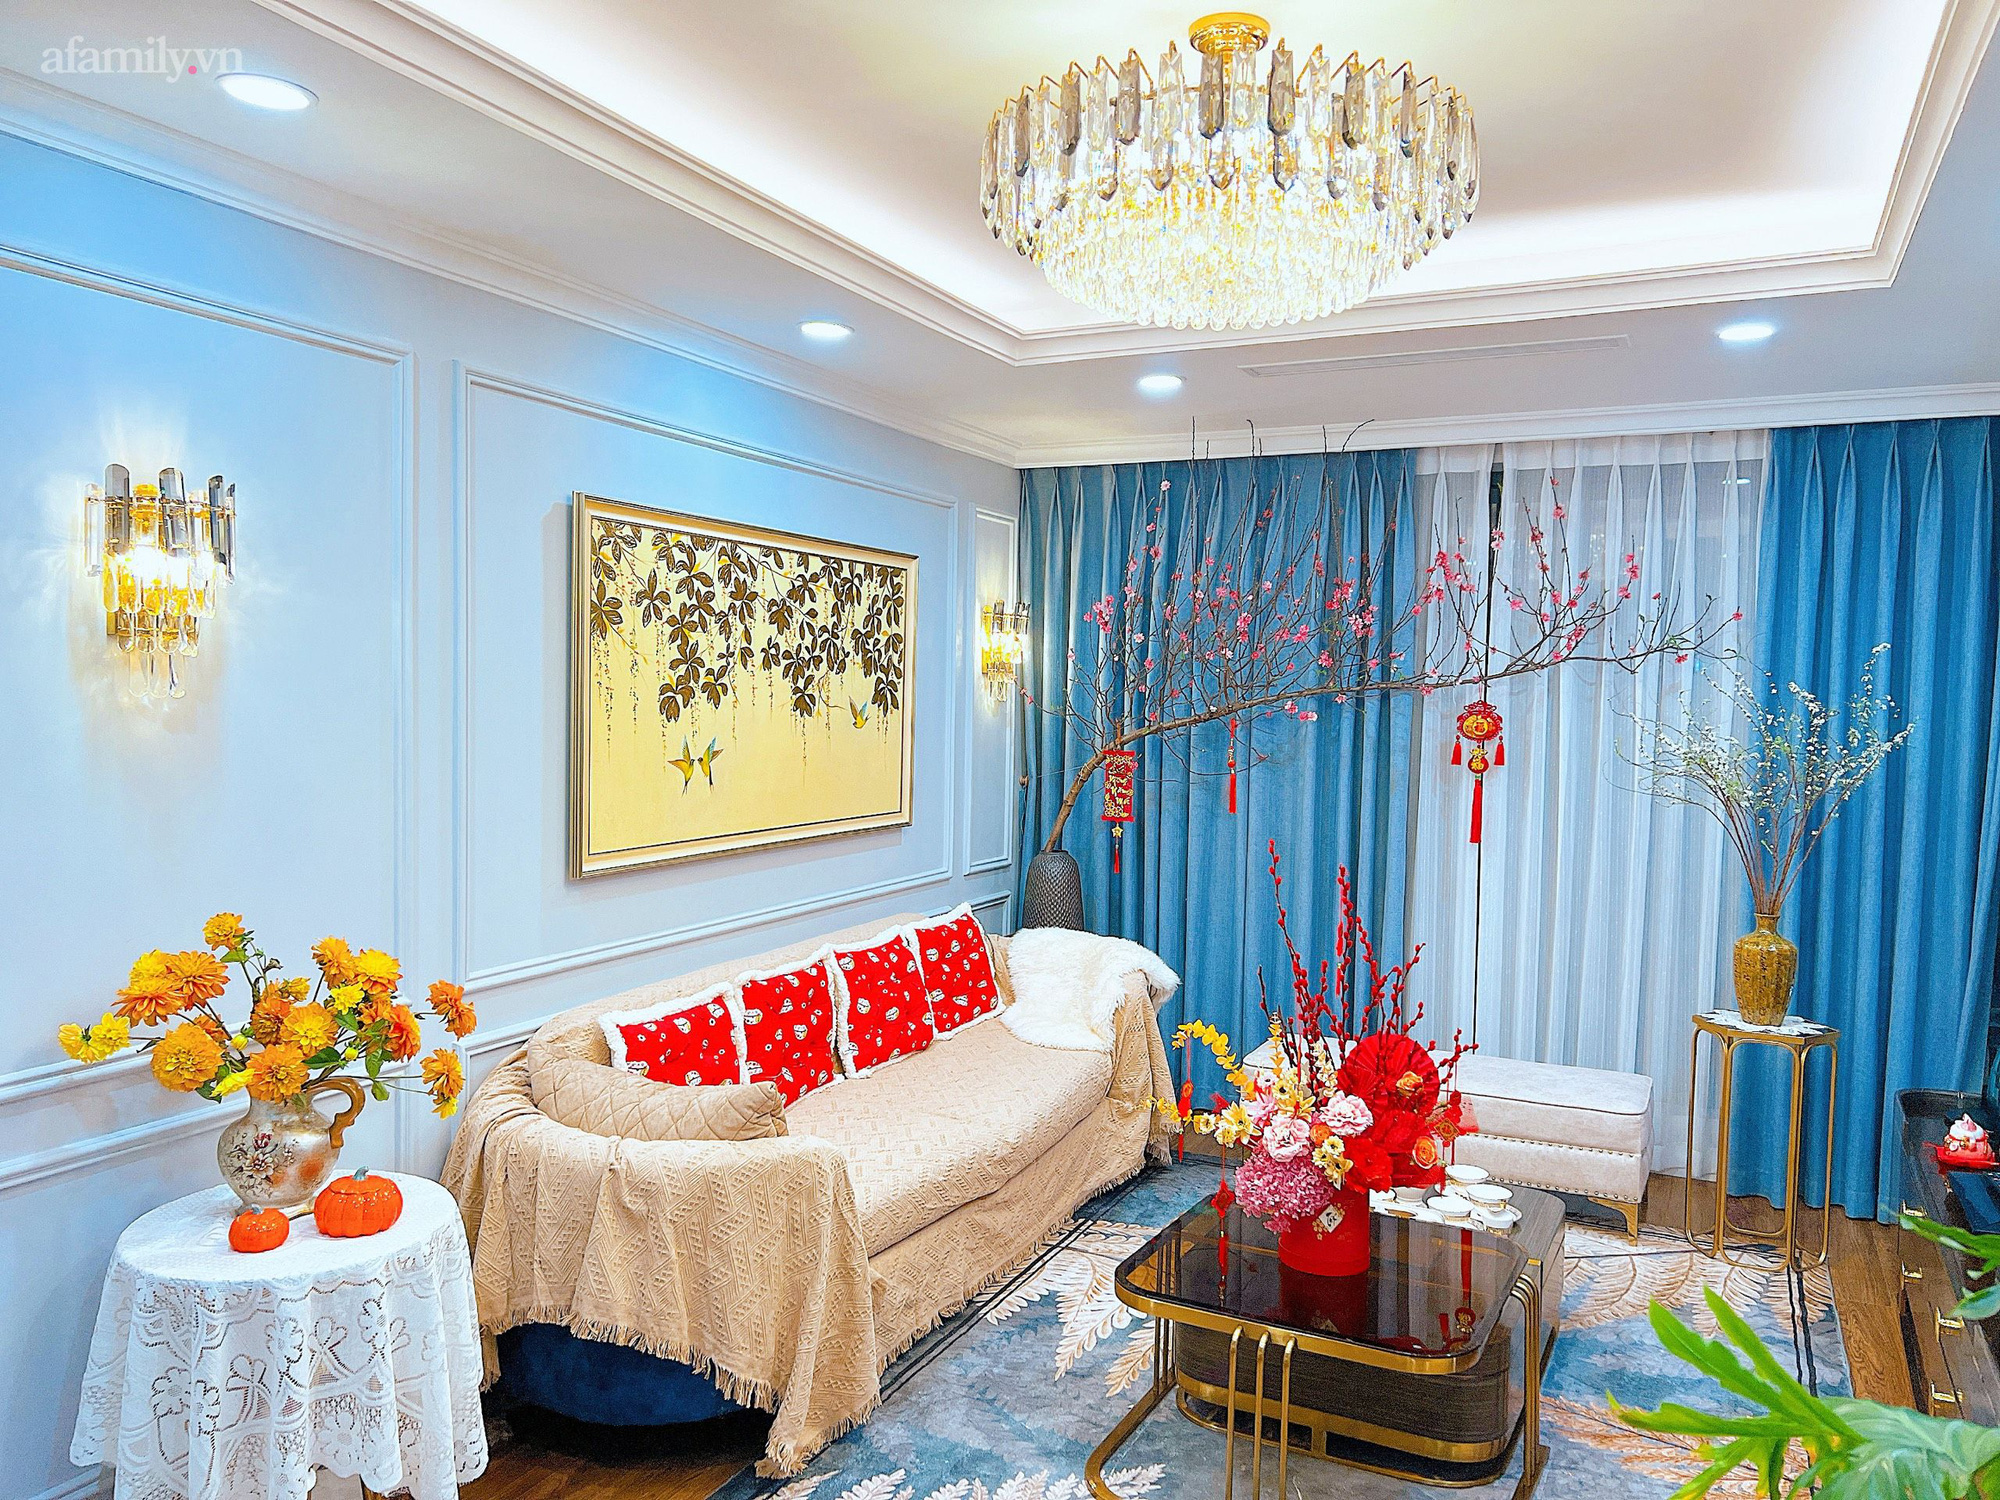 Mùng 3 Tết không gian sống của gia đình Hà Nội vẫn đẹp nức nở nhờ khéo léo trang trí hoa tươi và các món đồ decor  - Ảnh 2.